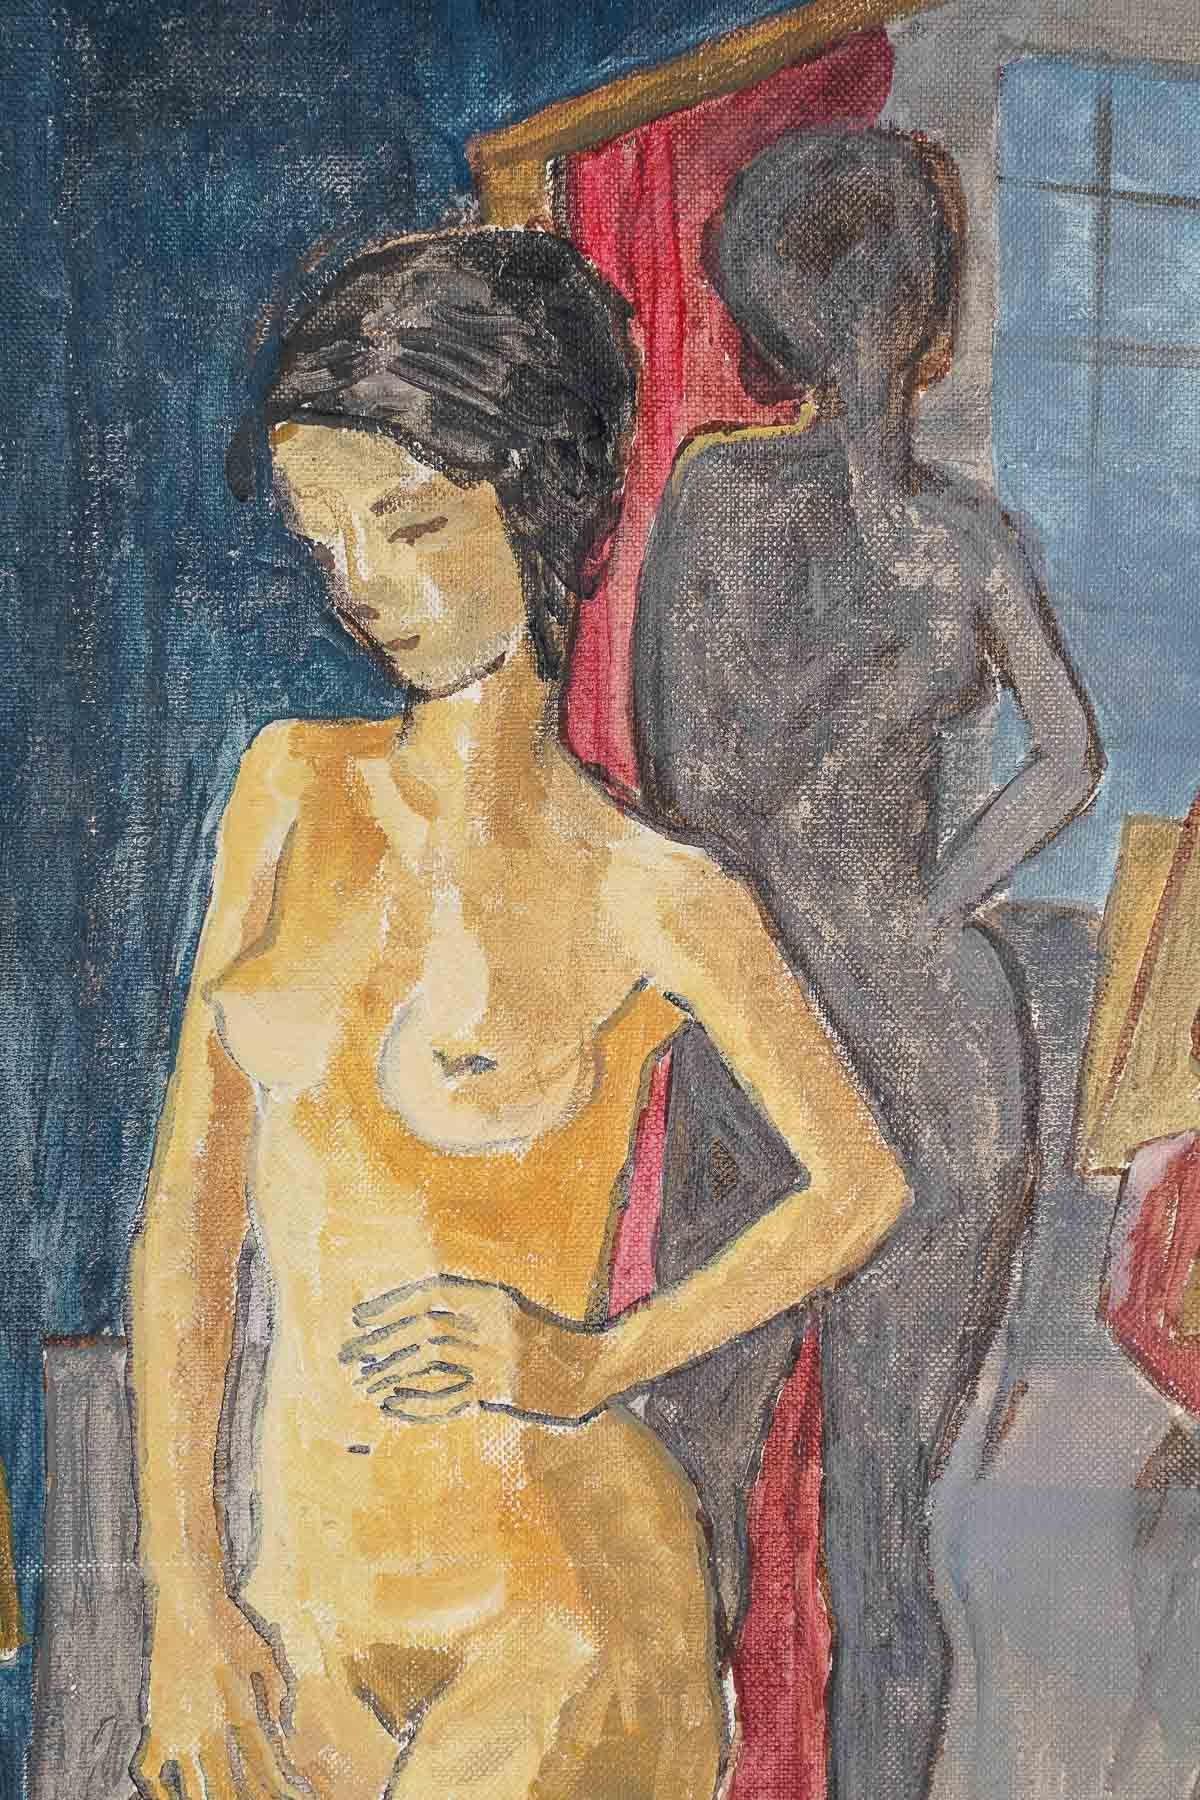 Huile sur toile d'Evelyne Luez.

Peinture sur toile d'Evelyne Luez, XXe siècle.
h : 55cm, l : 46cm, p : 2cm